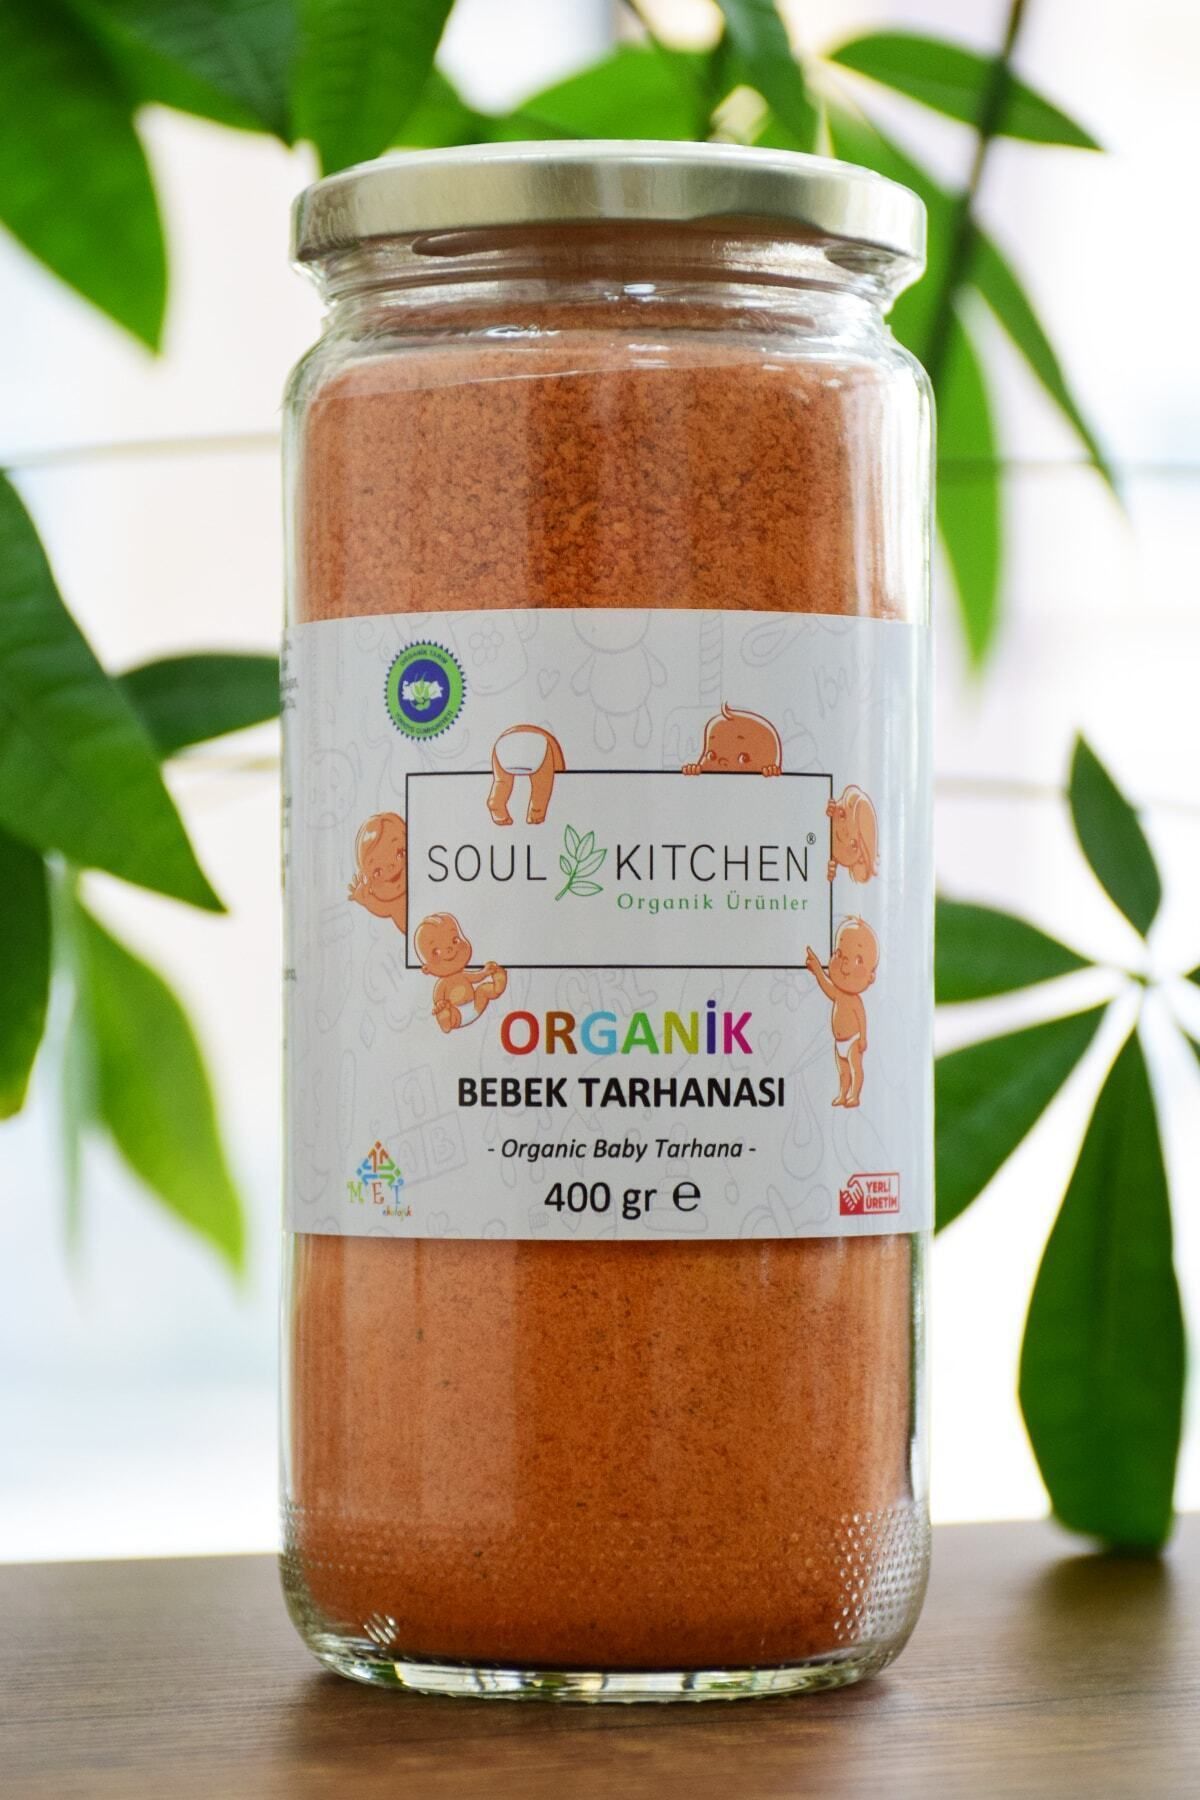 Soul Kitchen Organik Ürünler Organik Bebek Tarhanası 400gr